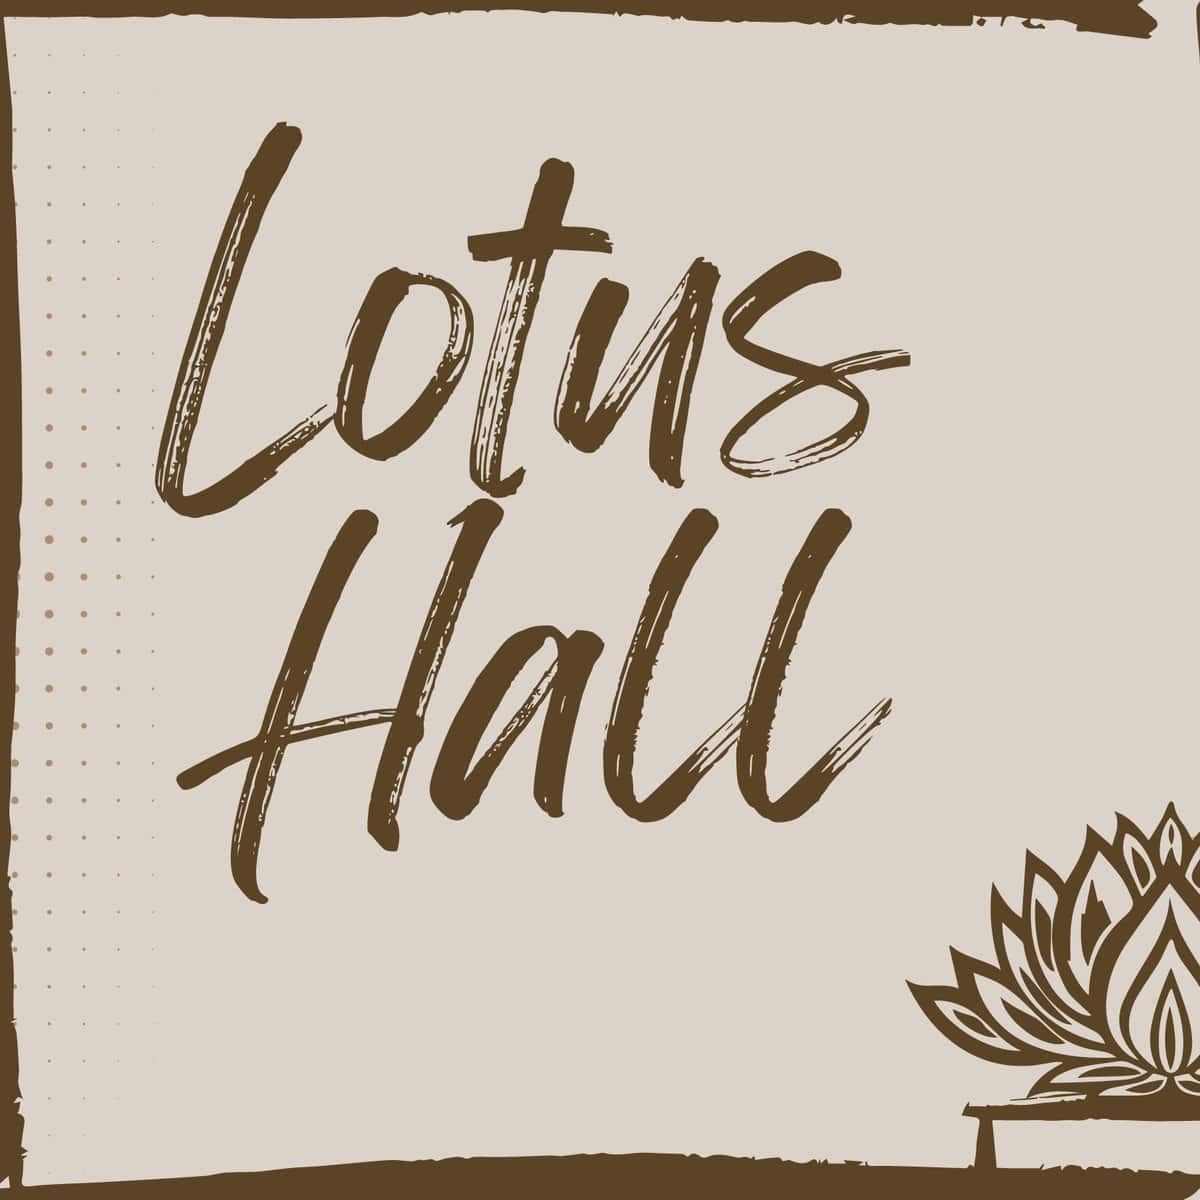 Lotus Hall